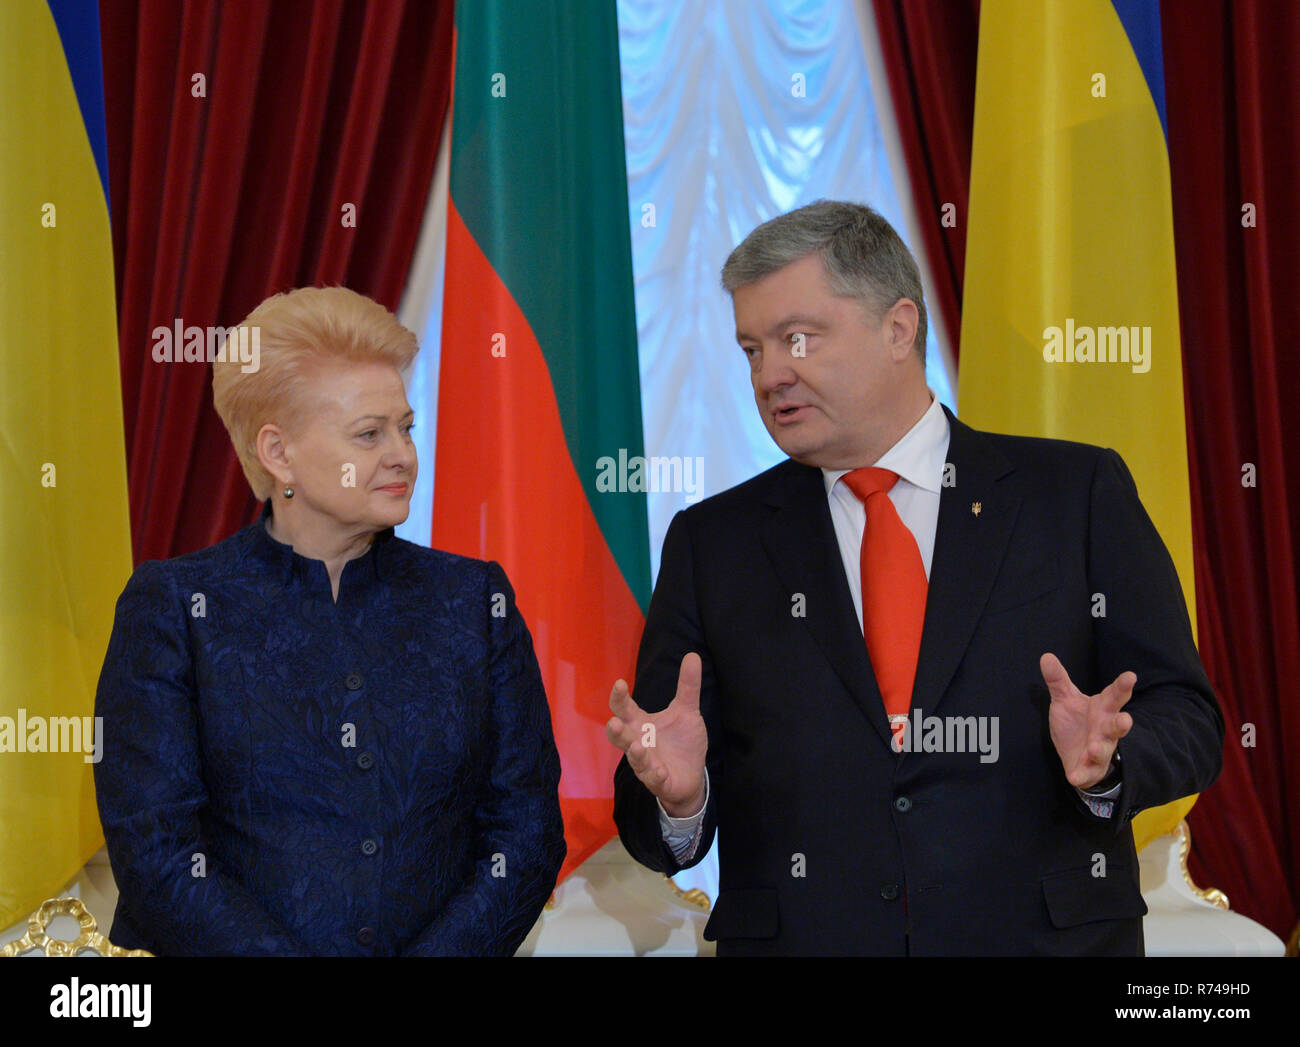 Le Président ukrainien Porochenko vu parler avec le président de la Lituanie Dalia Grybauskaitė lors de leur réunion à Kiev. Banque D'Images